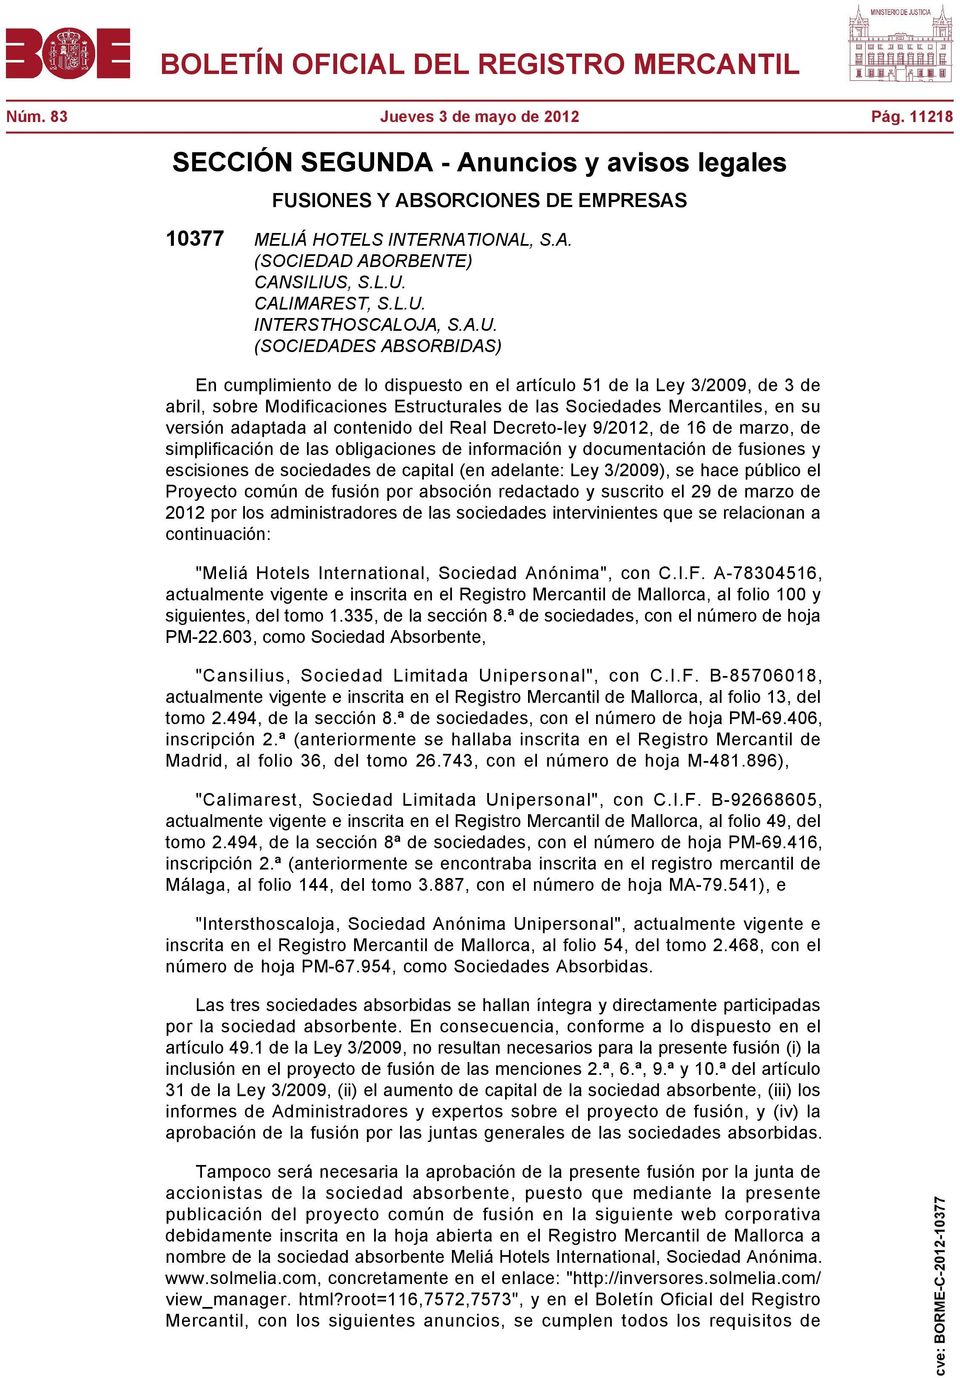 Mercantiles, en su versión adaptada al contenido del Real Decreto-ley 9/2012, de 16 de marzo, de simplificación de las obligaciones de información y documentación de fusiones y escisiones de